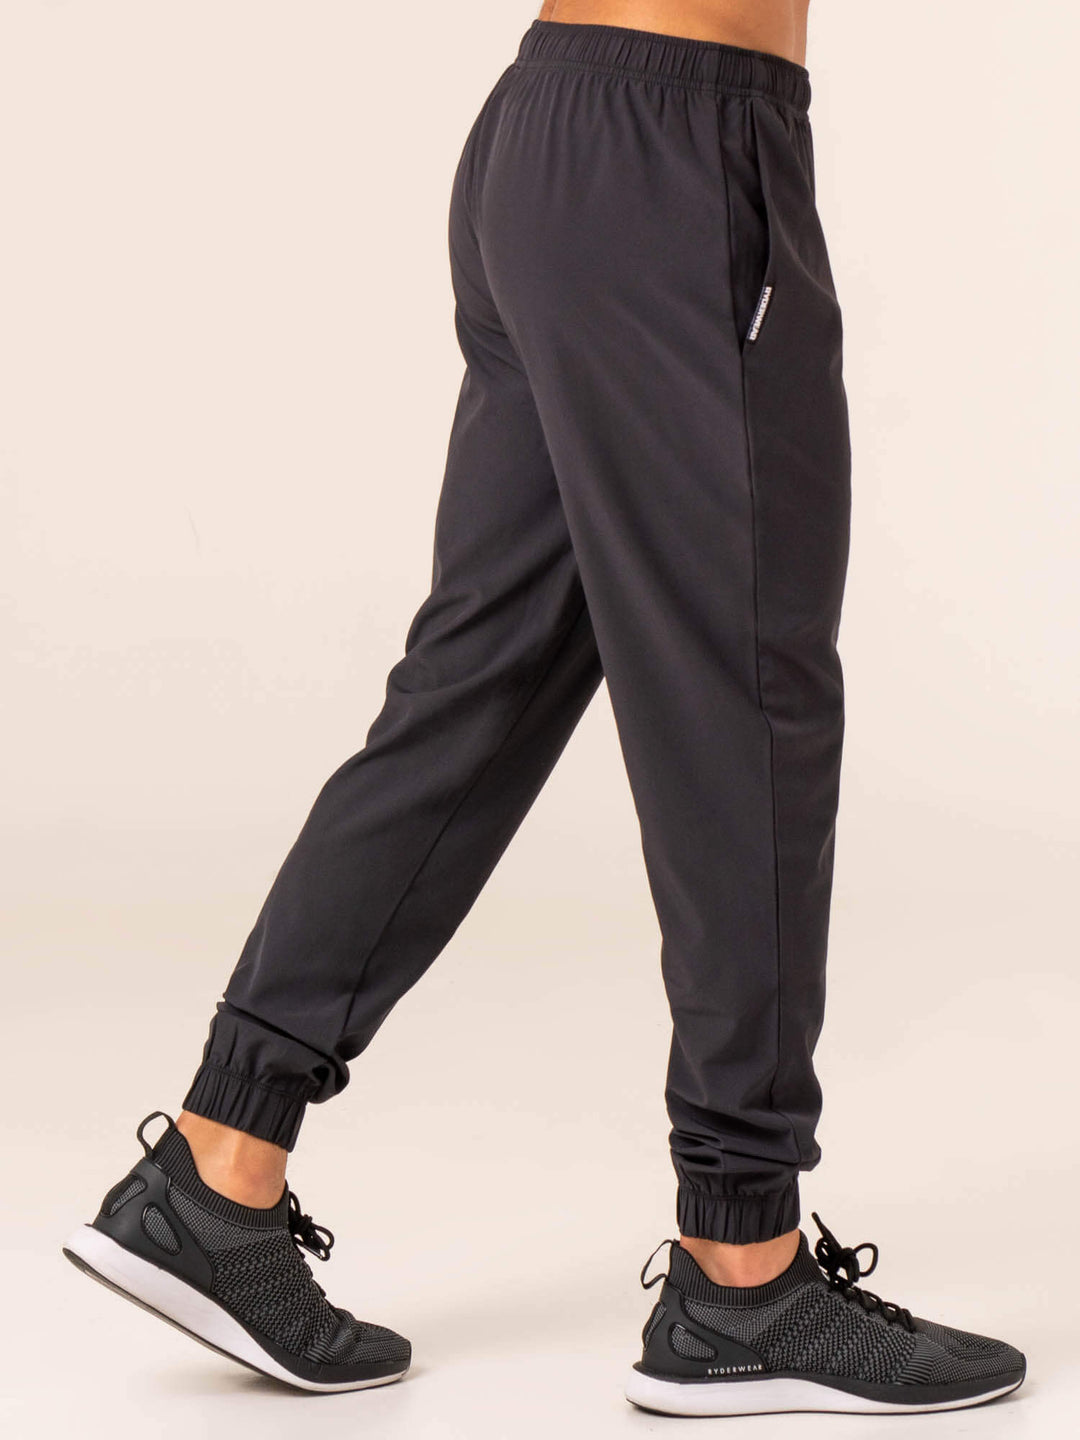 Emerge Training Pant - Faded Black Clothing Ryderwear 